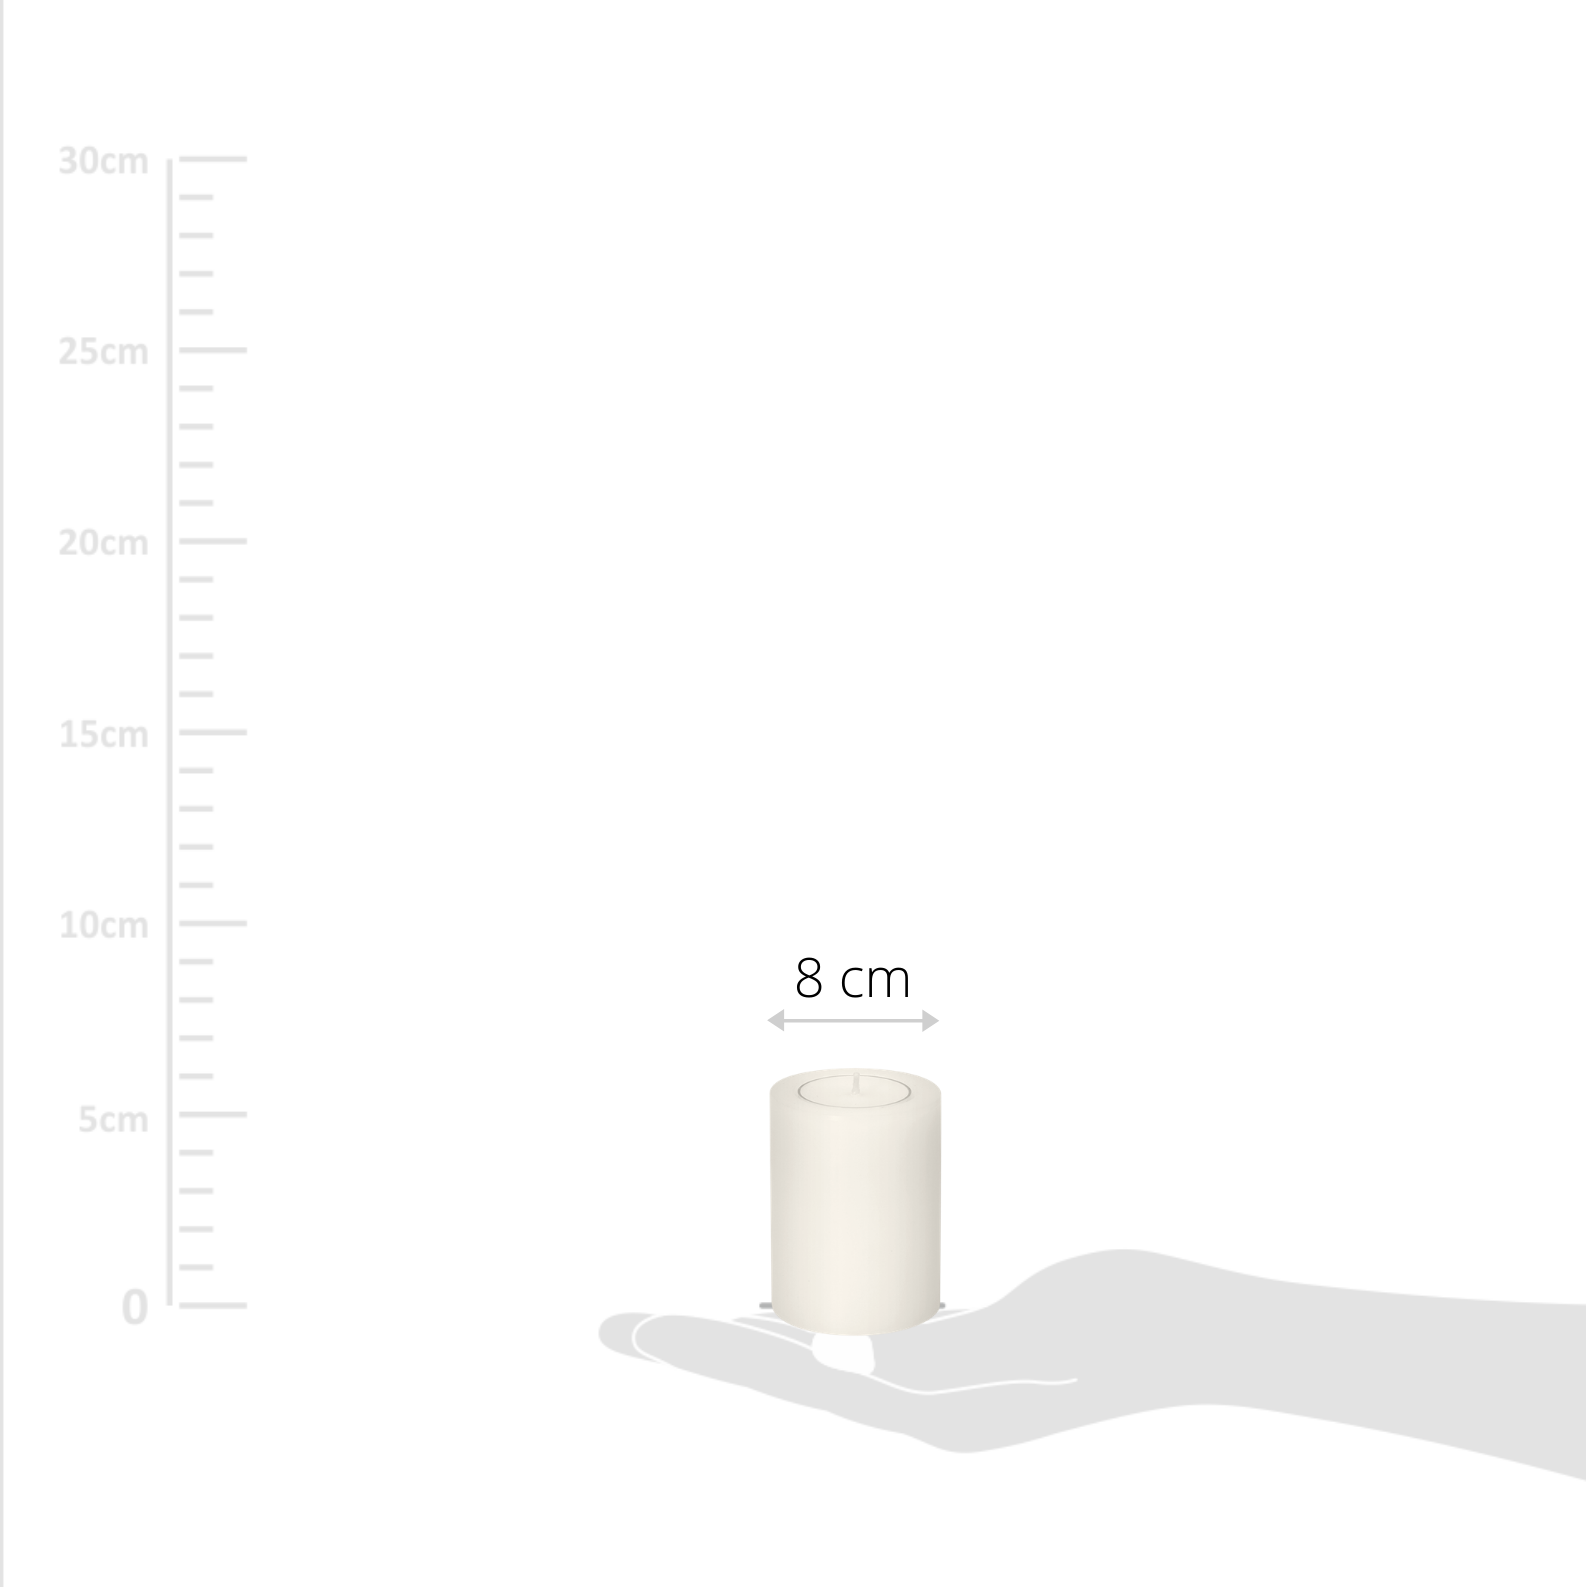 4er Set Teelichthalter Dauerkerze Cornelius, Höhe 8 cm, Durchmesser 6 cm, hitzbeständig bis 90 Grad - 1a-zuhause.de